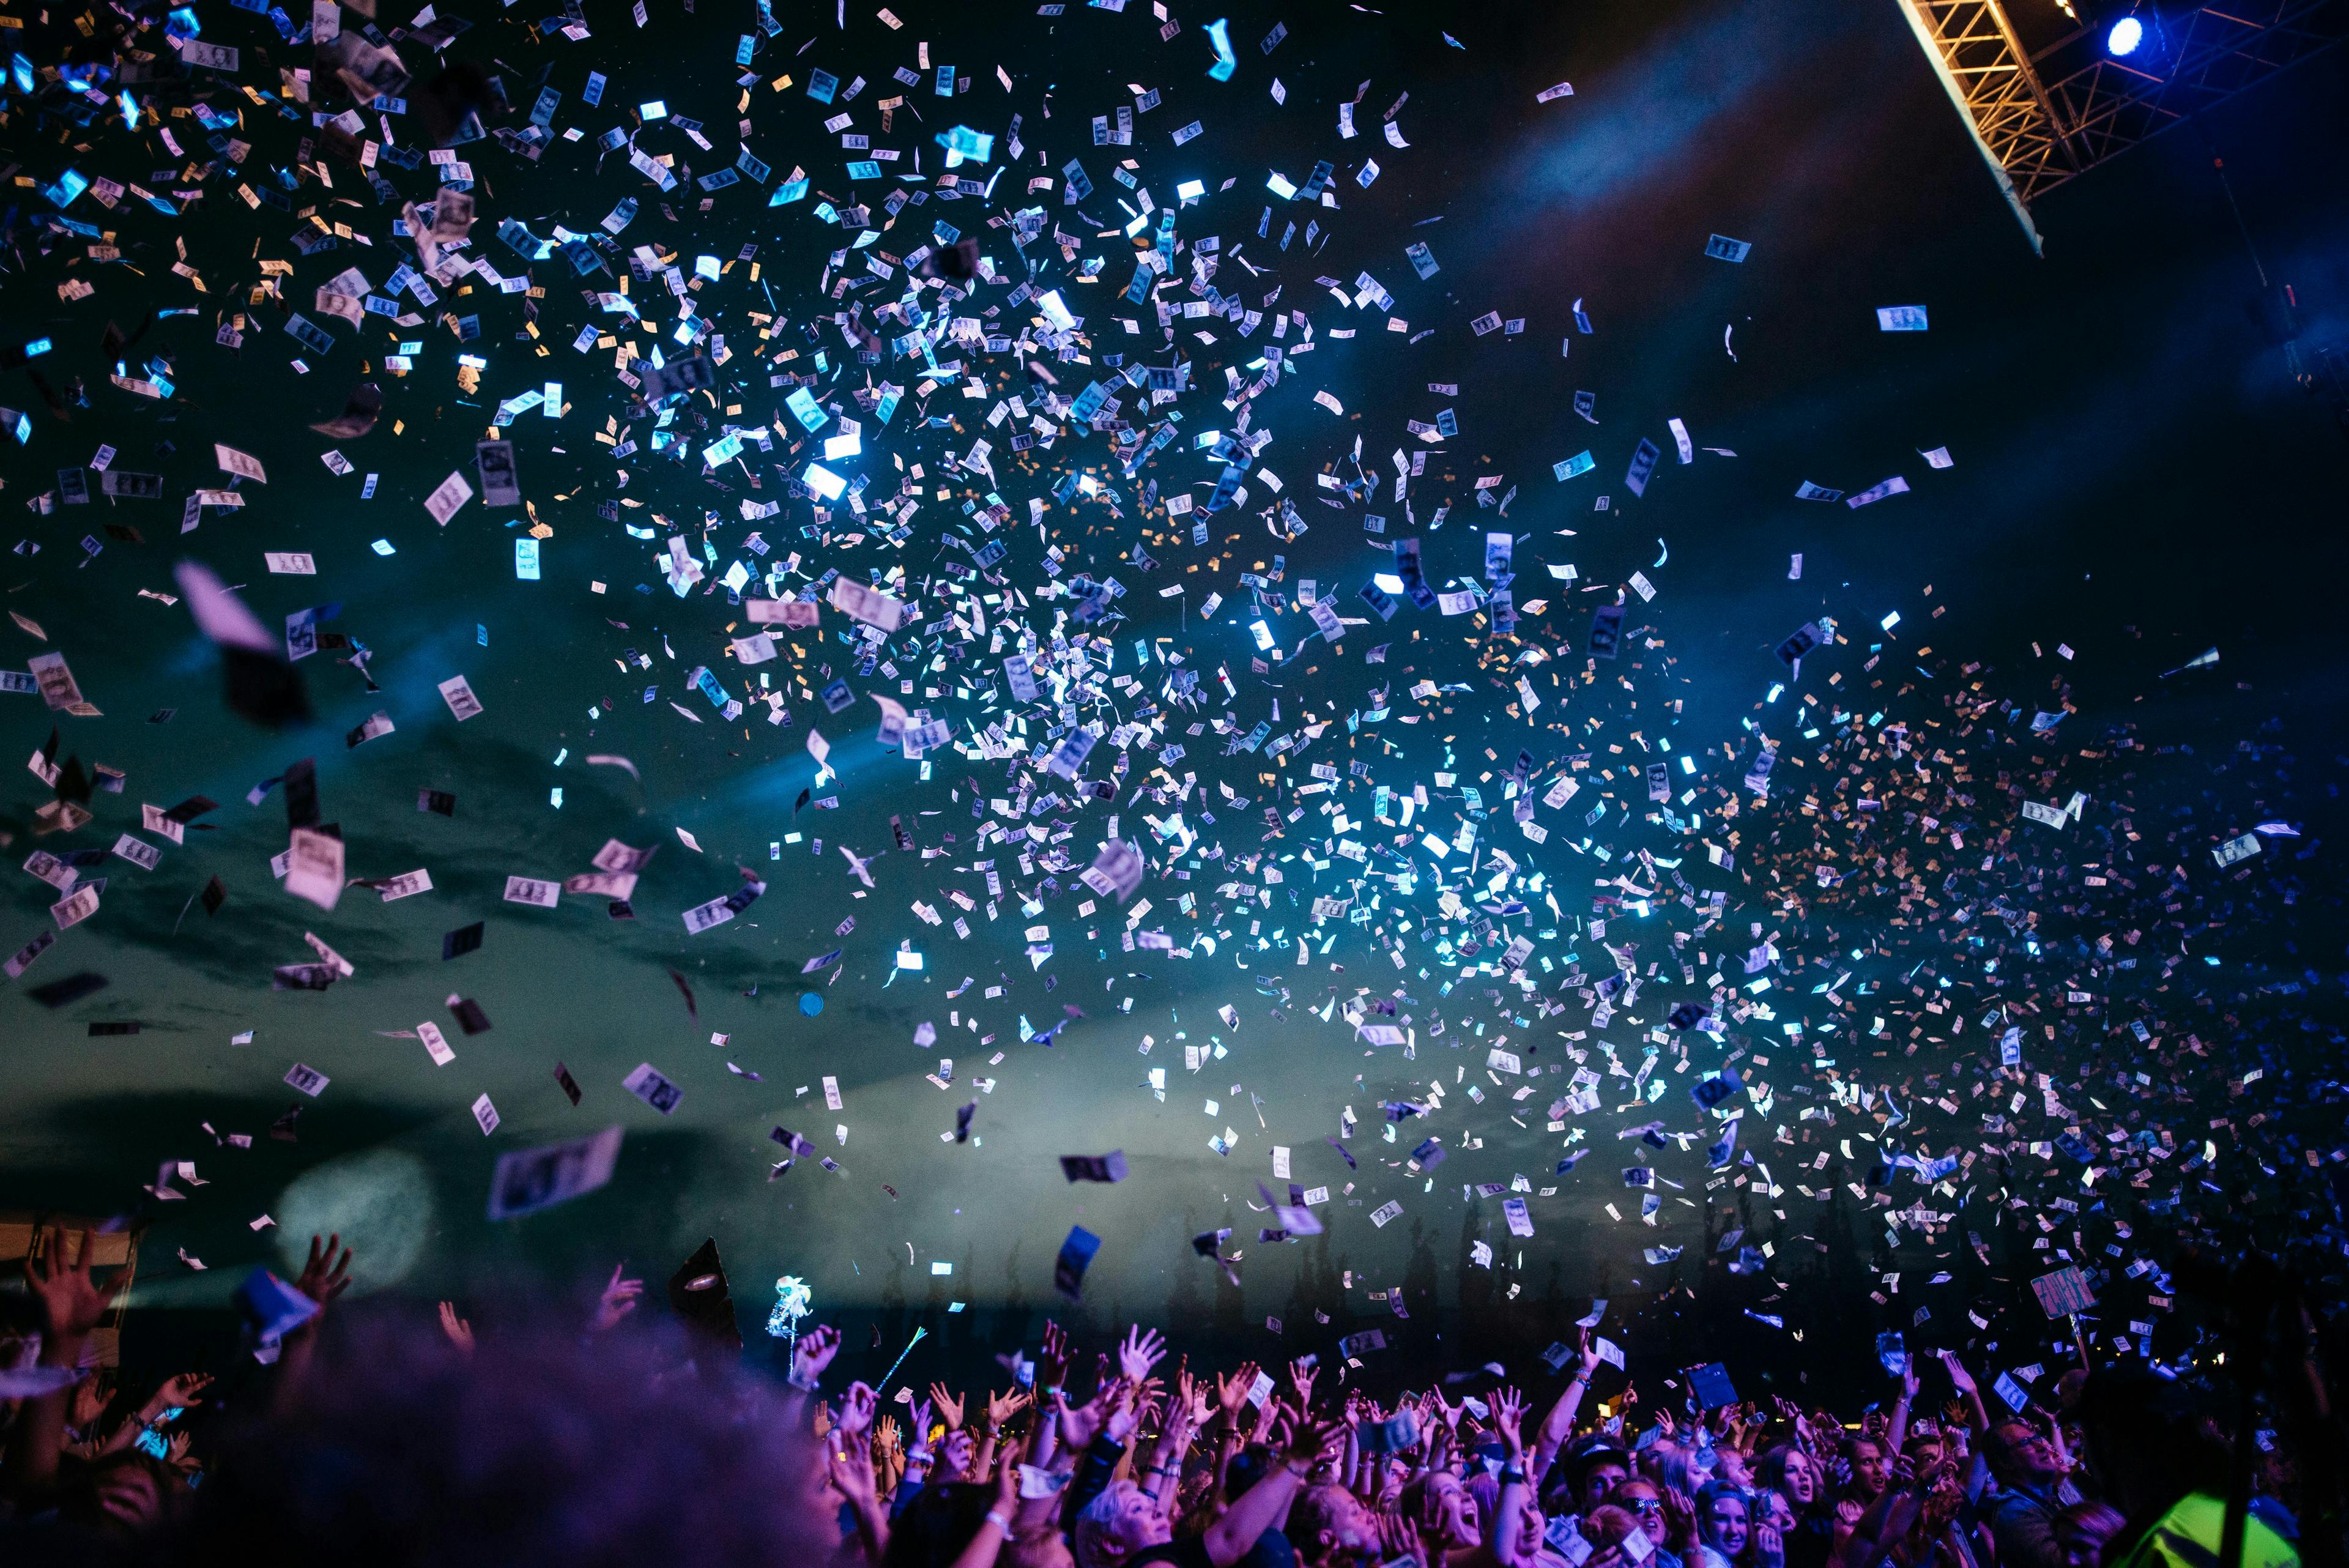 Confetti at a nightclub